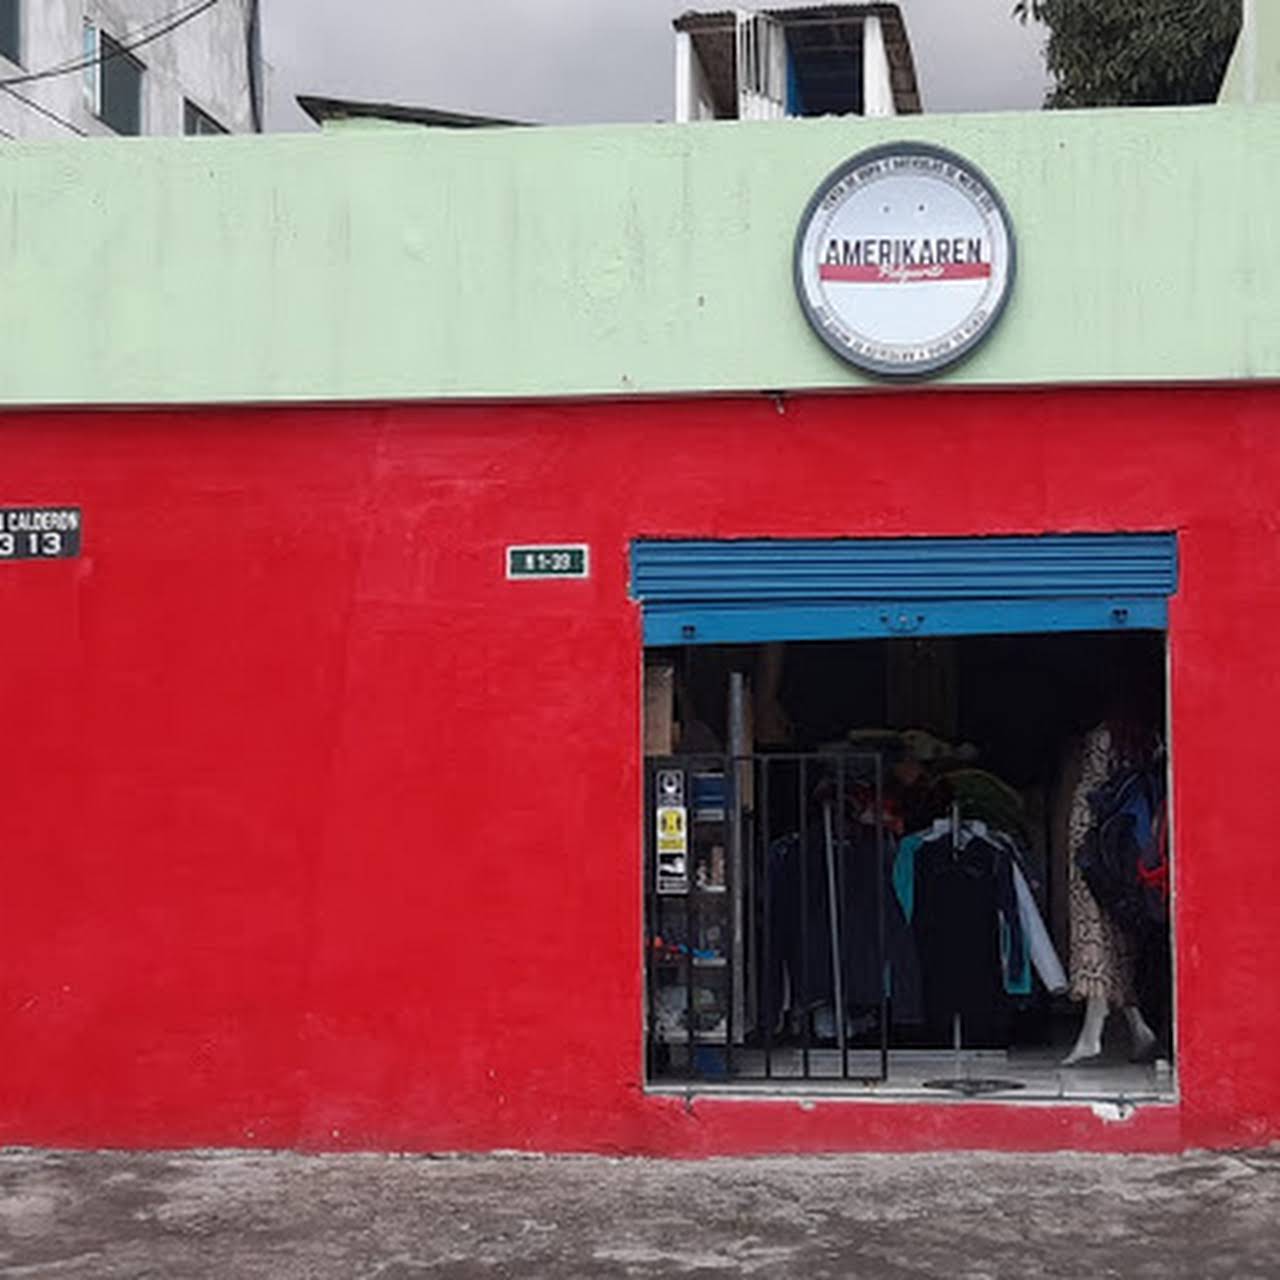 Amerikaren Pulguerito Ropa de segunda mano Quito Tienda De Ropa Usada en Quito